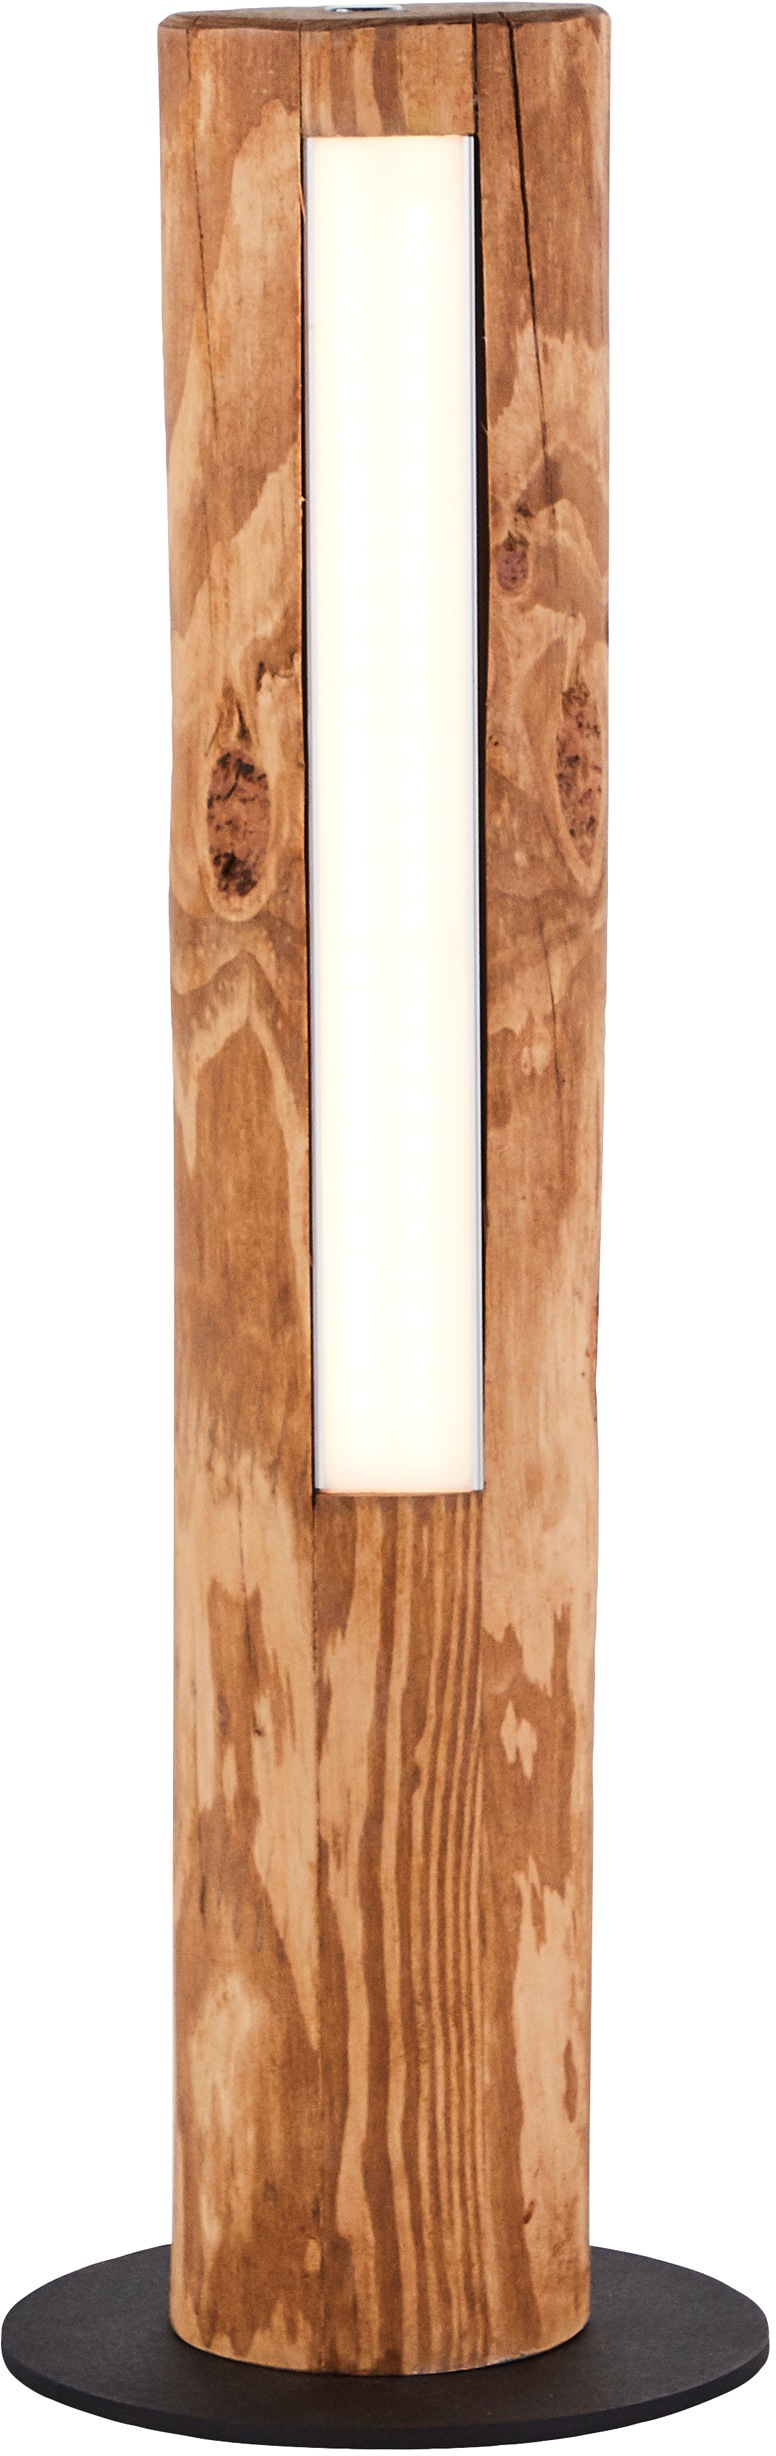 Brilliant LED Tischleuchte »Odun«, 1 flammig-flammig, 46 cm Höhe, Touchdimmer, 800 lm, warmweiß, Holz/Metall, kiefer gebeizt